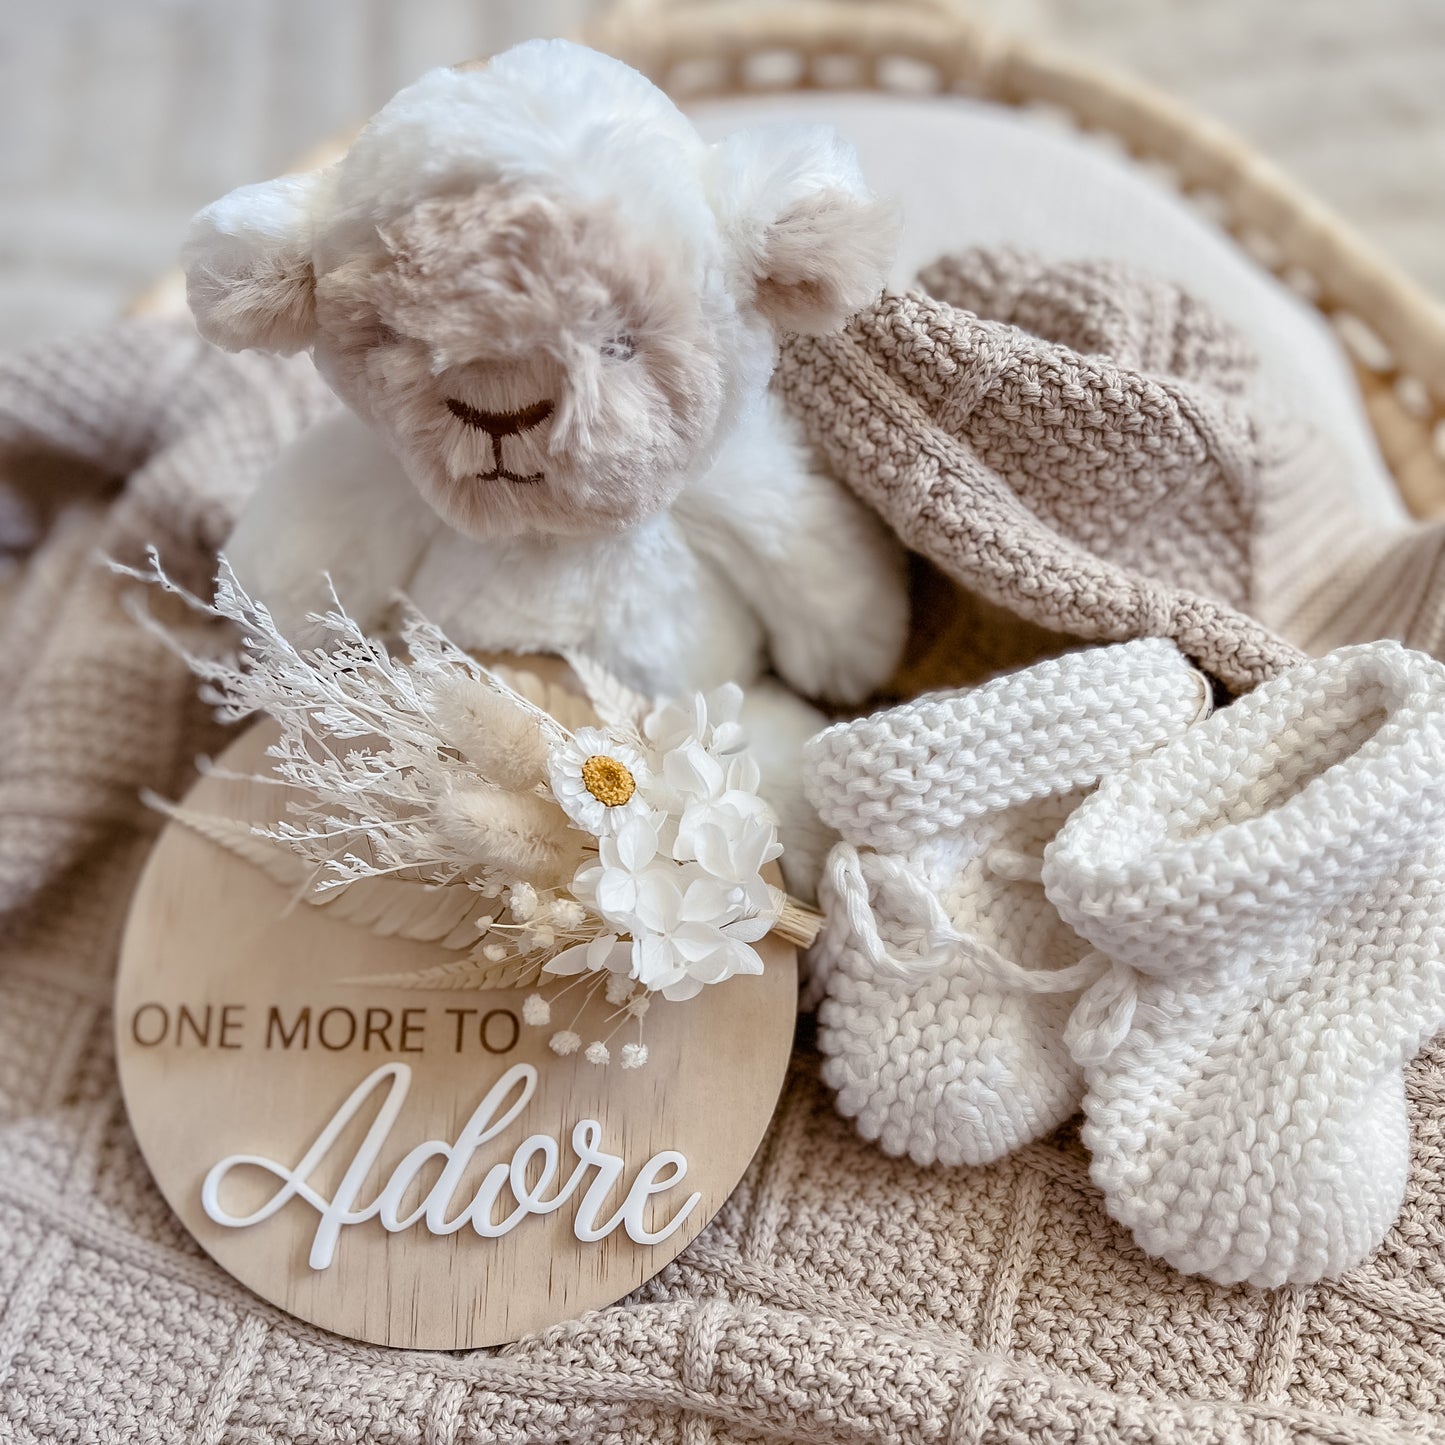 Pregnancy Announcement Plaque w/ dried flowers (Design Options)